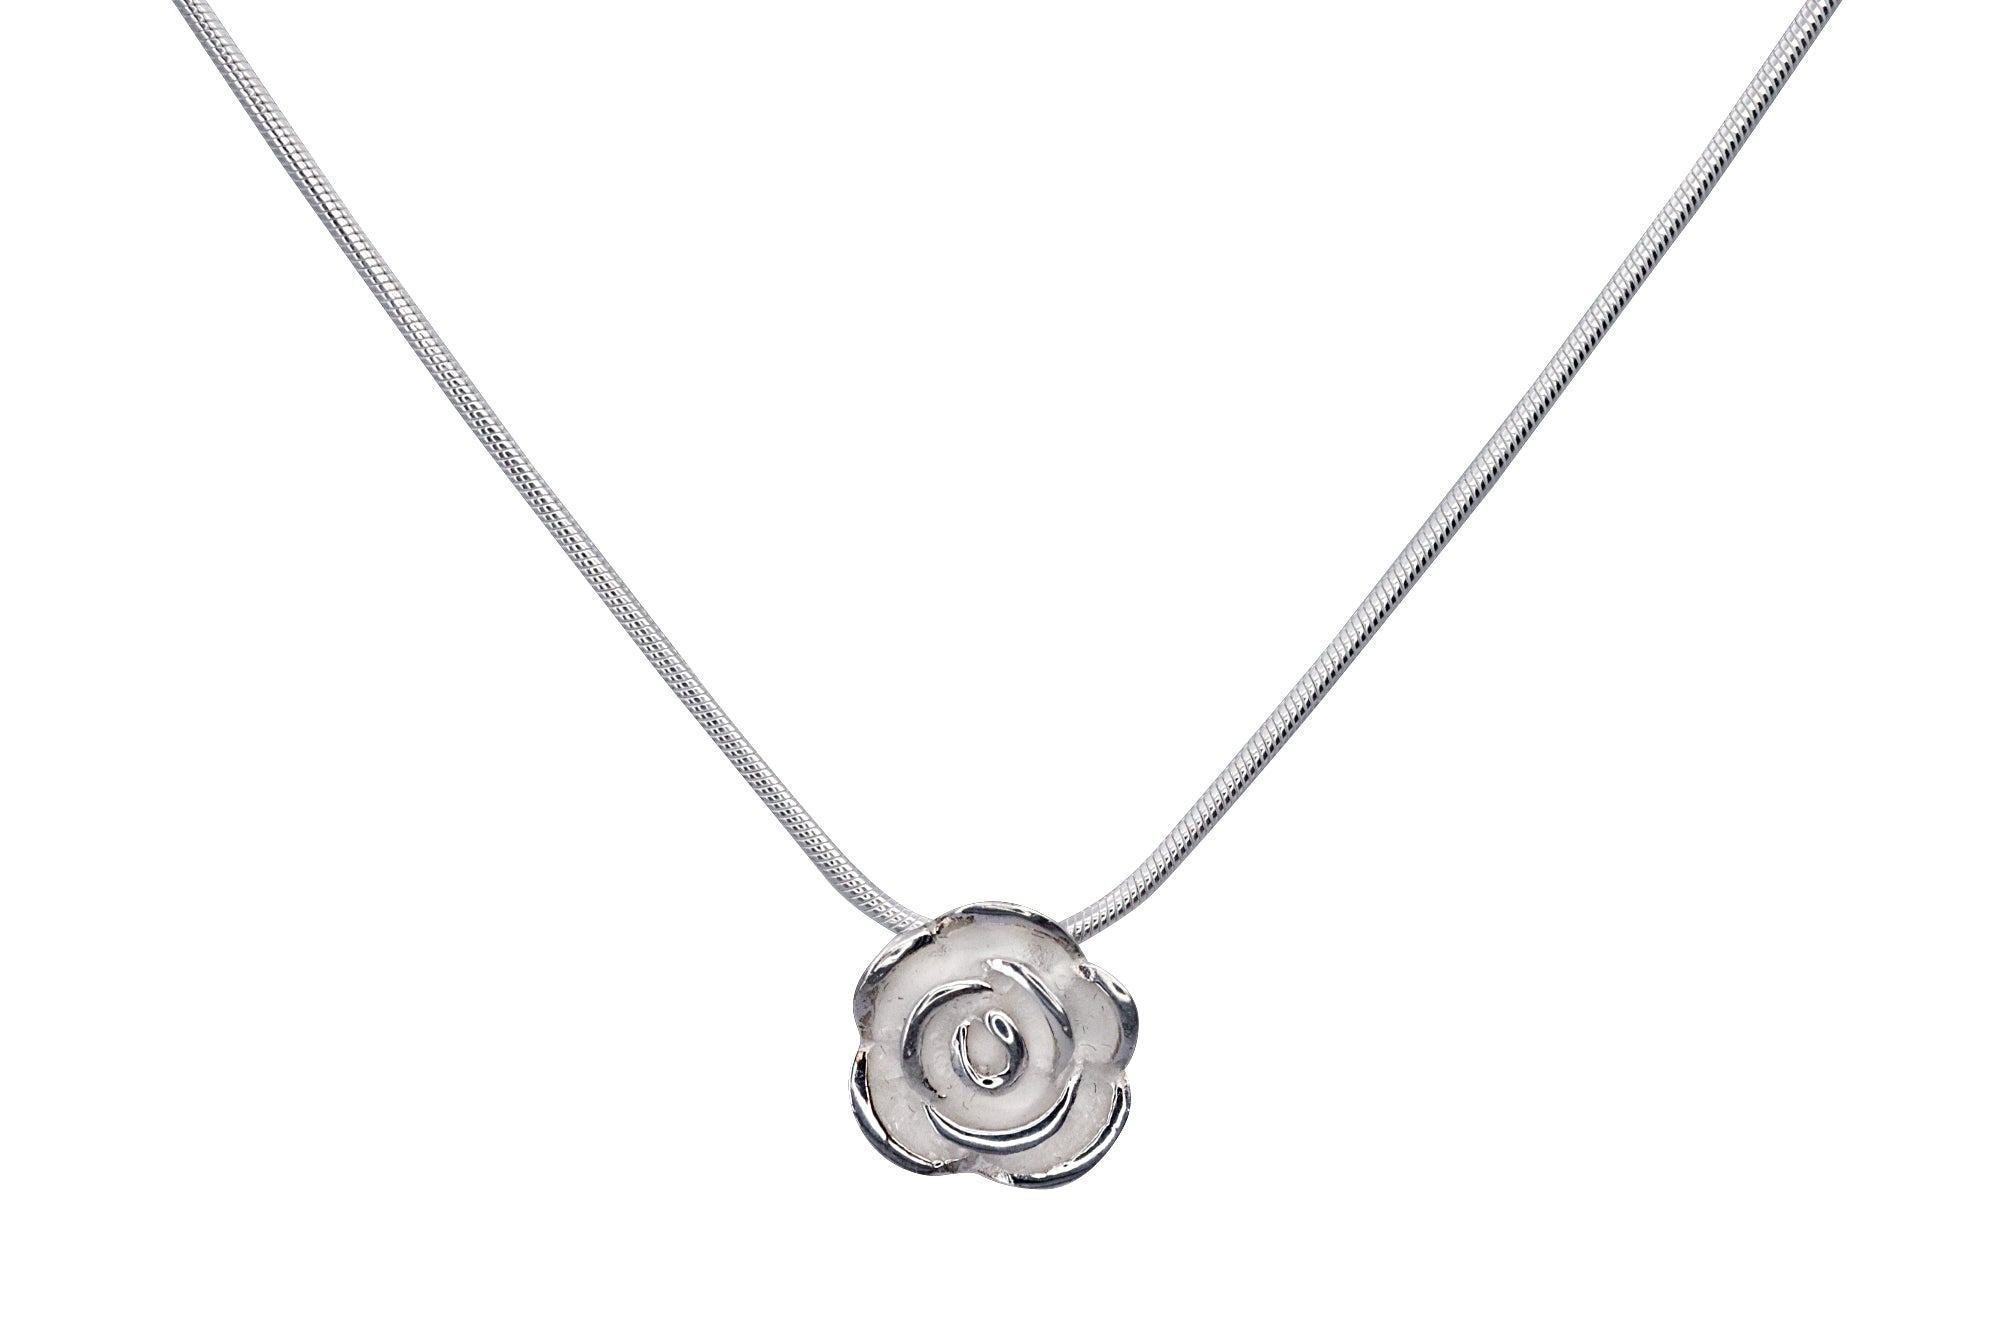 Eine Rose als Anhänger für Damen aus Silber mit sandgestrahlter Oberfläche und versenkten Ösen zum verdeckten Fädeln einer Kette.